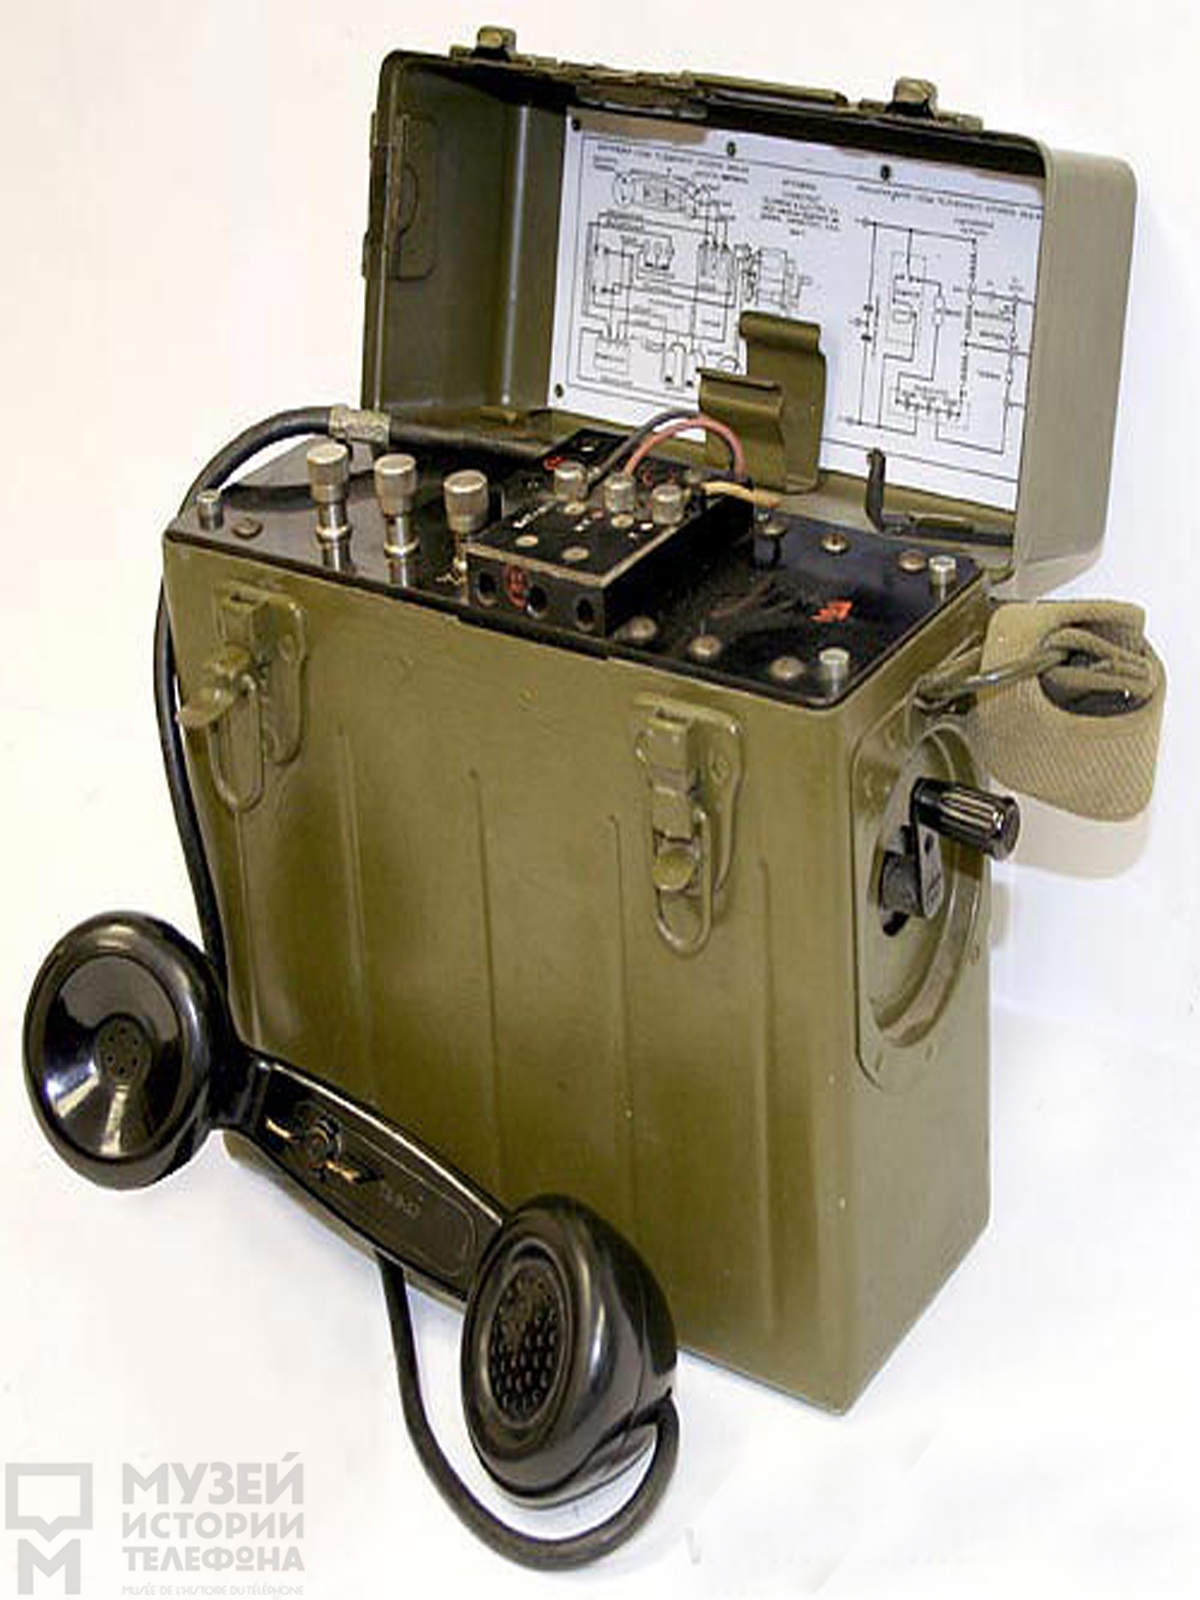 Полевой телефонный аппарат ИАА-44, поставлялся в СССР во время ВОВ